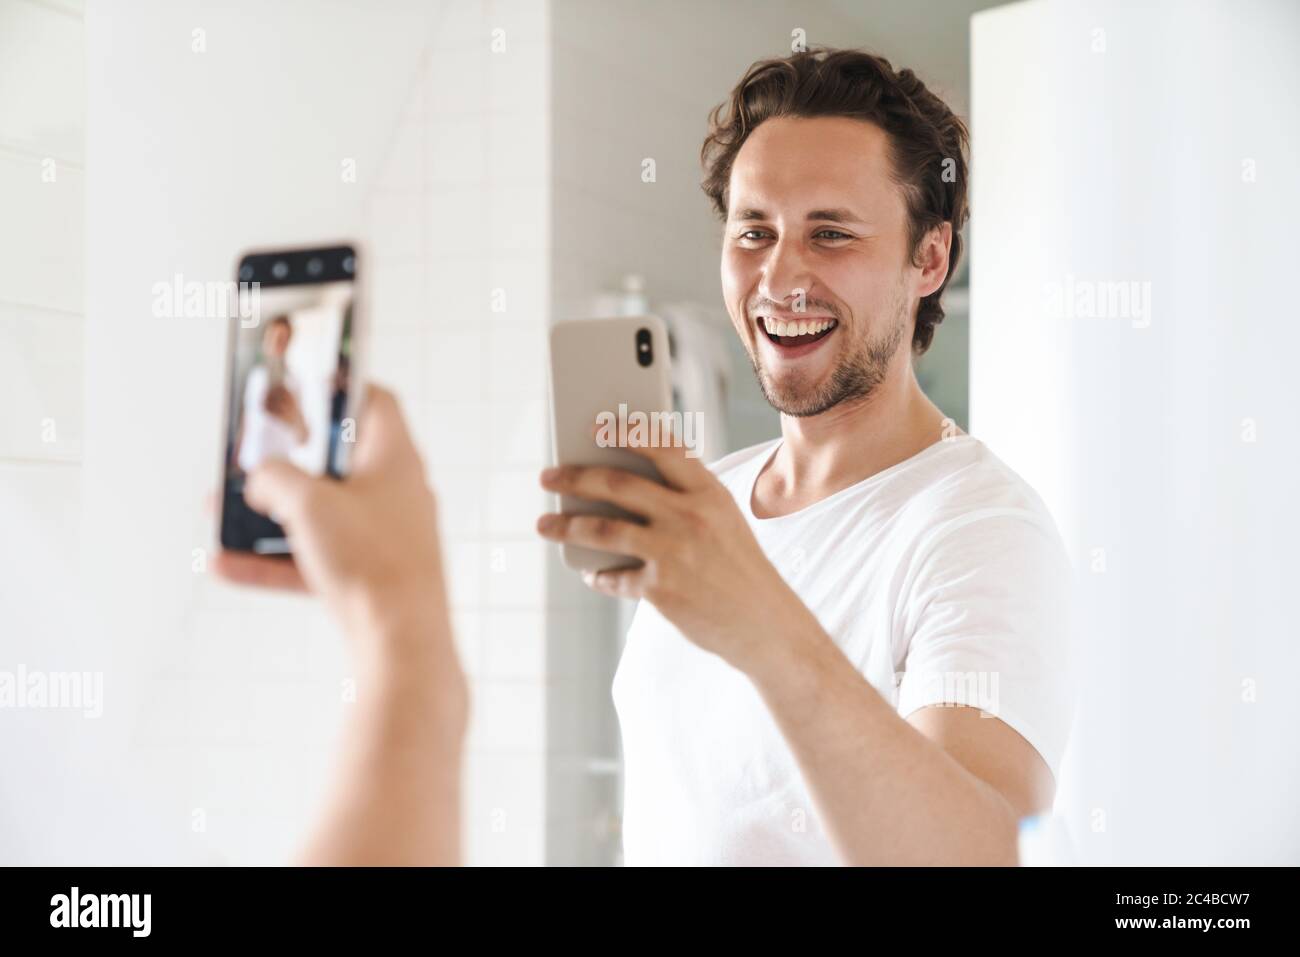 Attraktiver, glücklicher junger Mann, der vor dem Badezimmerspiegel steht und ein Selfie macht Stockfoto